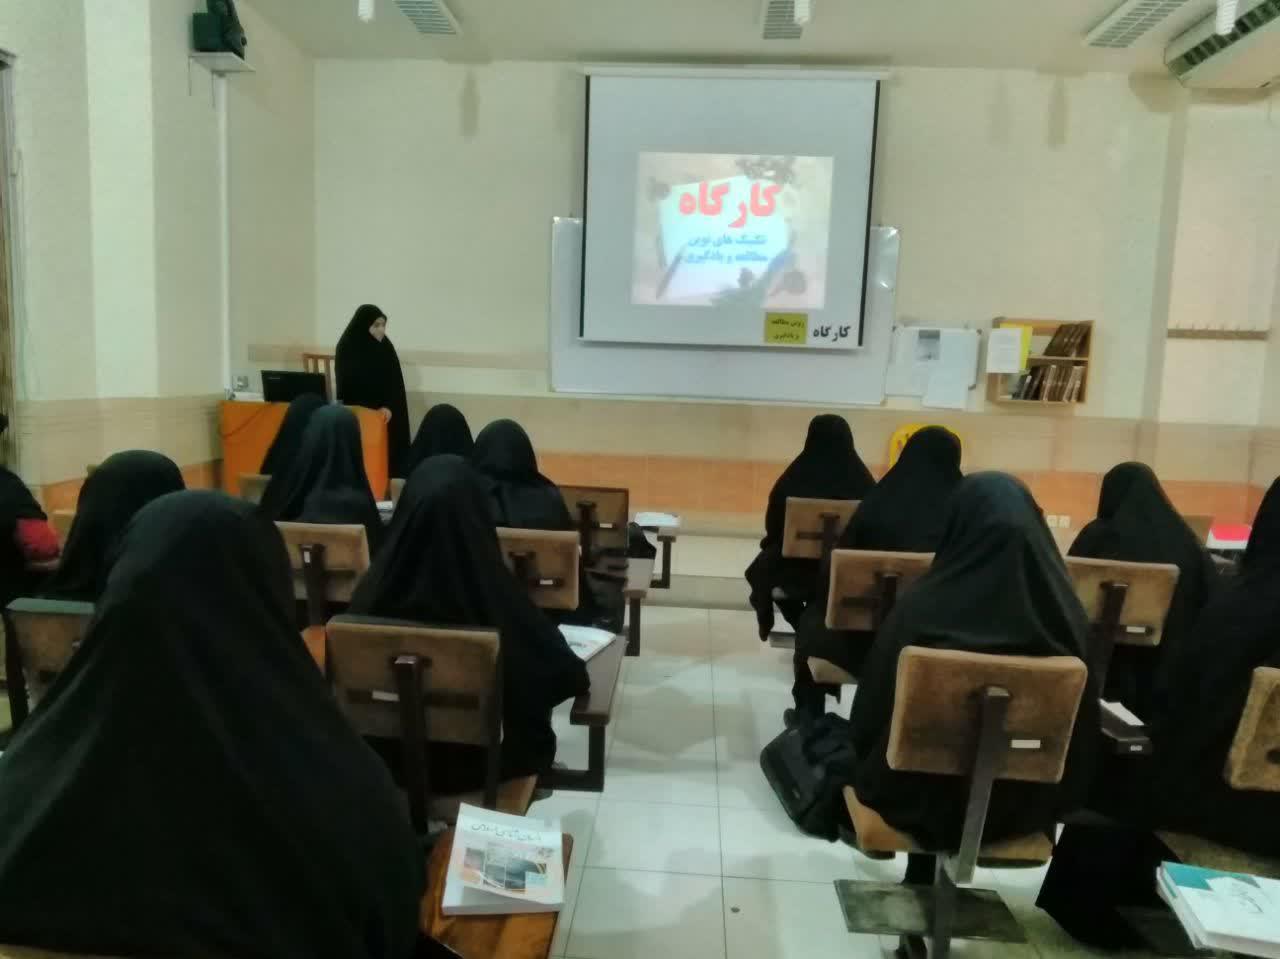 کارگاه تکنیک های نوین مطالعه و یادگیری در حوزه علمیه غدیریه شیراز 